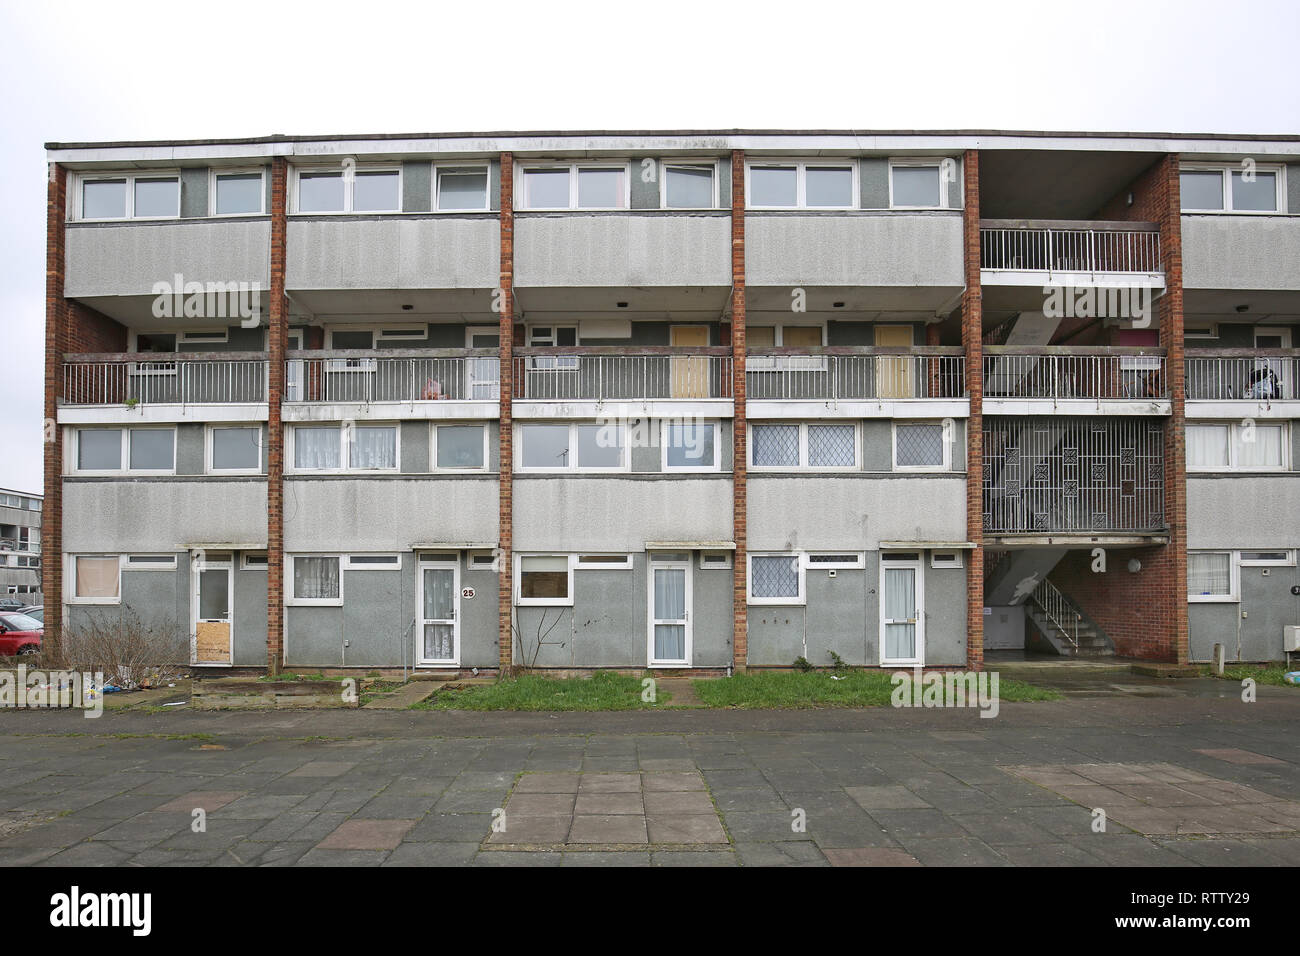 Eine heruntergekommene, 4-stöckigen Block der Rat maisononets in Basildon, Essex, UK. Wohnungen noch belegt, aber für den Abriss vorgesehen. Stockfoto